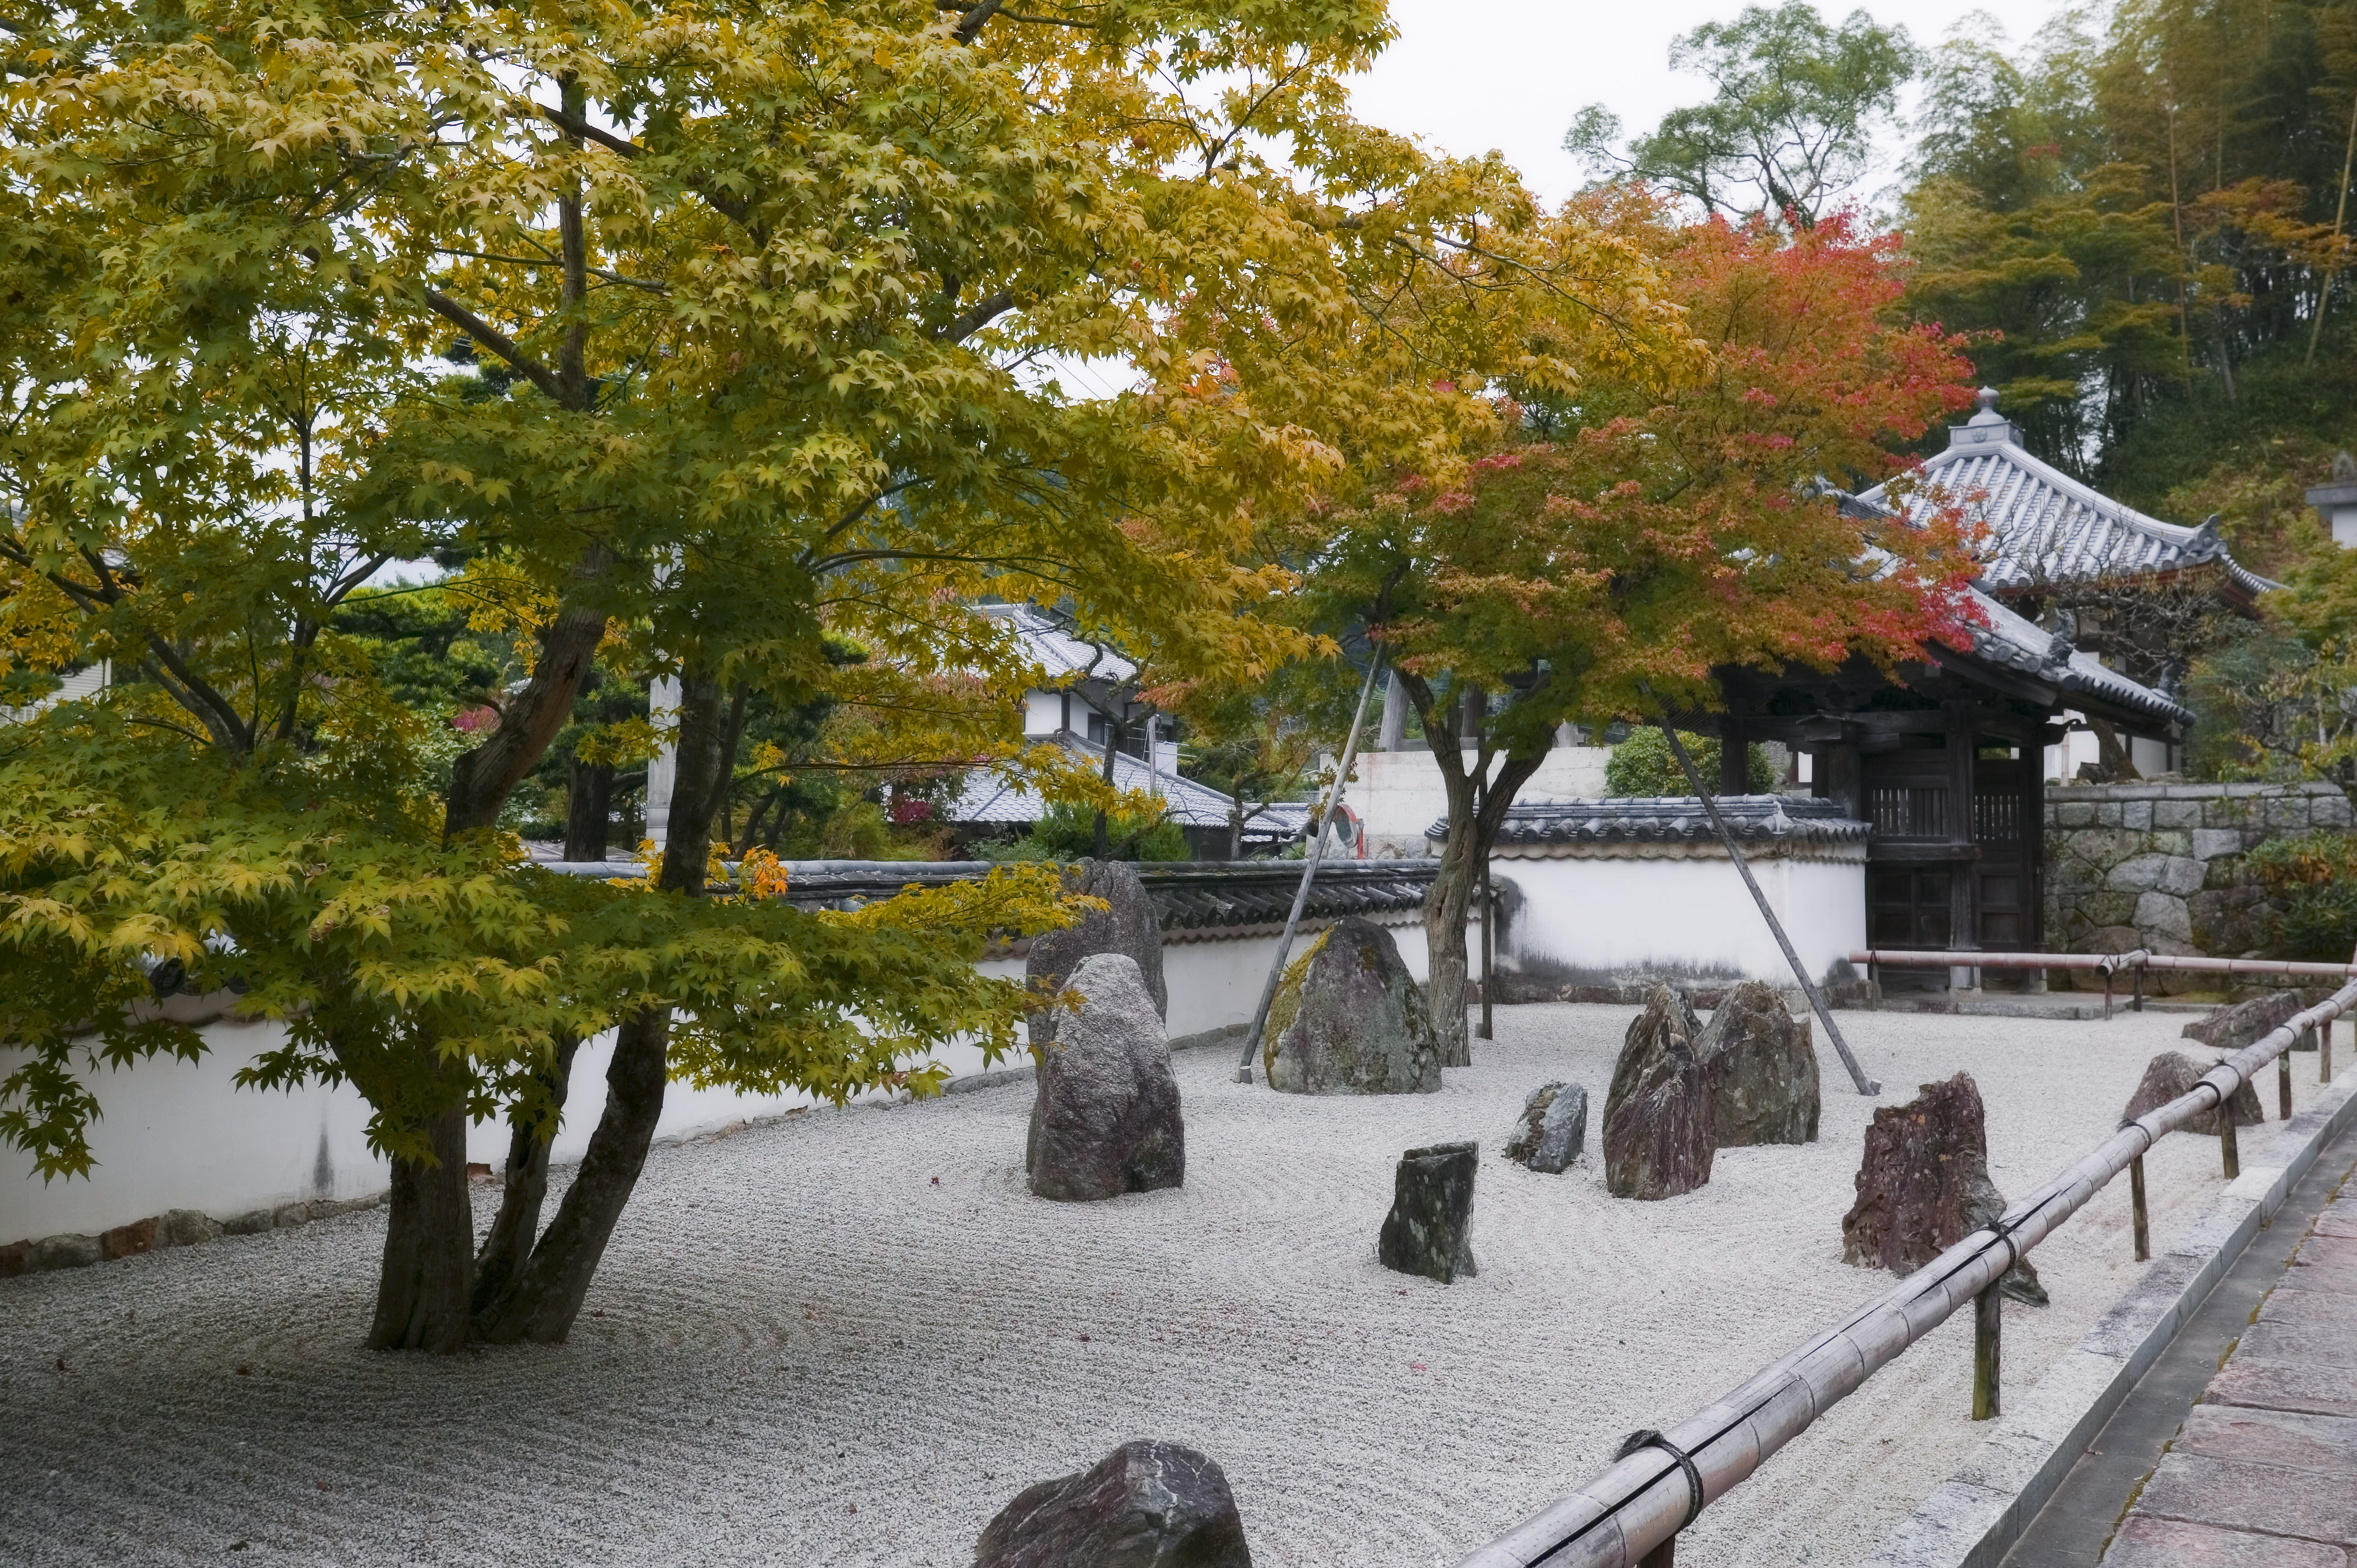 fotografia, material, livra, ajardine, imagine, proveja fotografia,Um jardim de rochas de um templo claro que pertence  seita de Zen, paisagem seca jardim japons, jardim de rochas, desgnio de areia, 